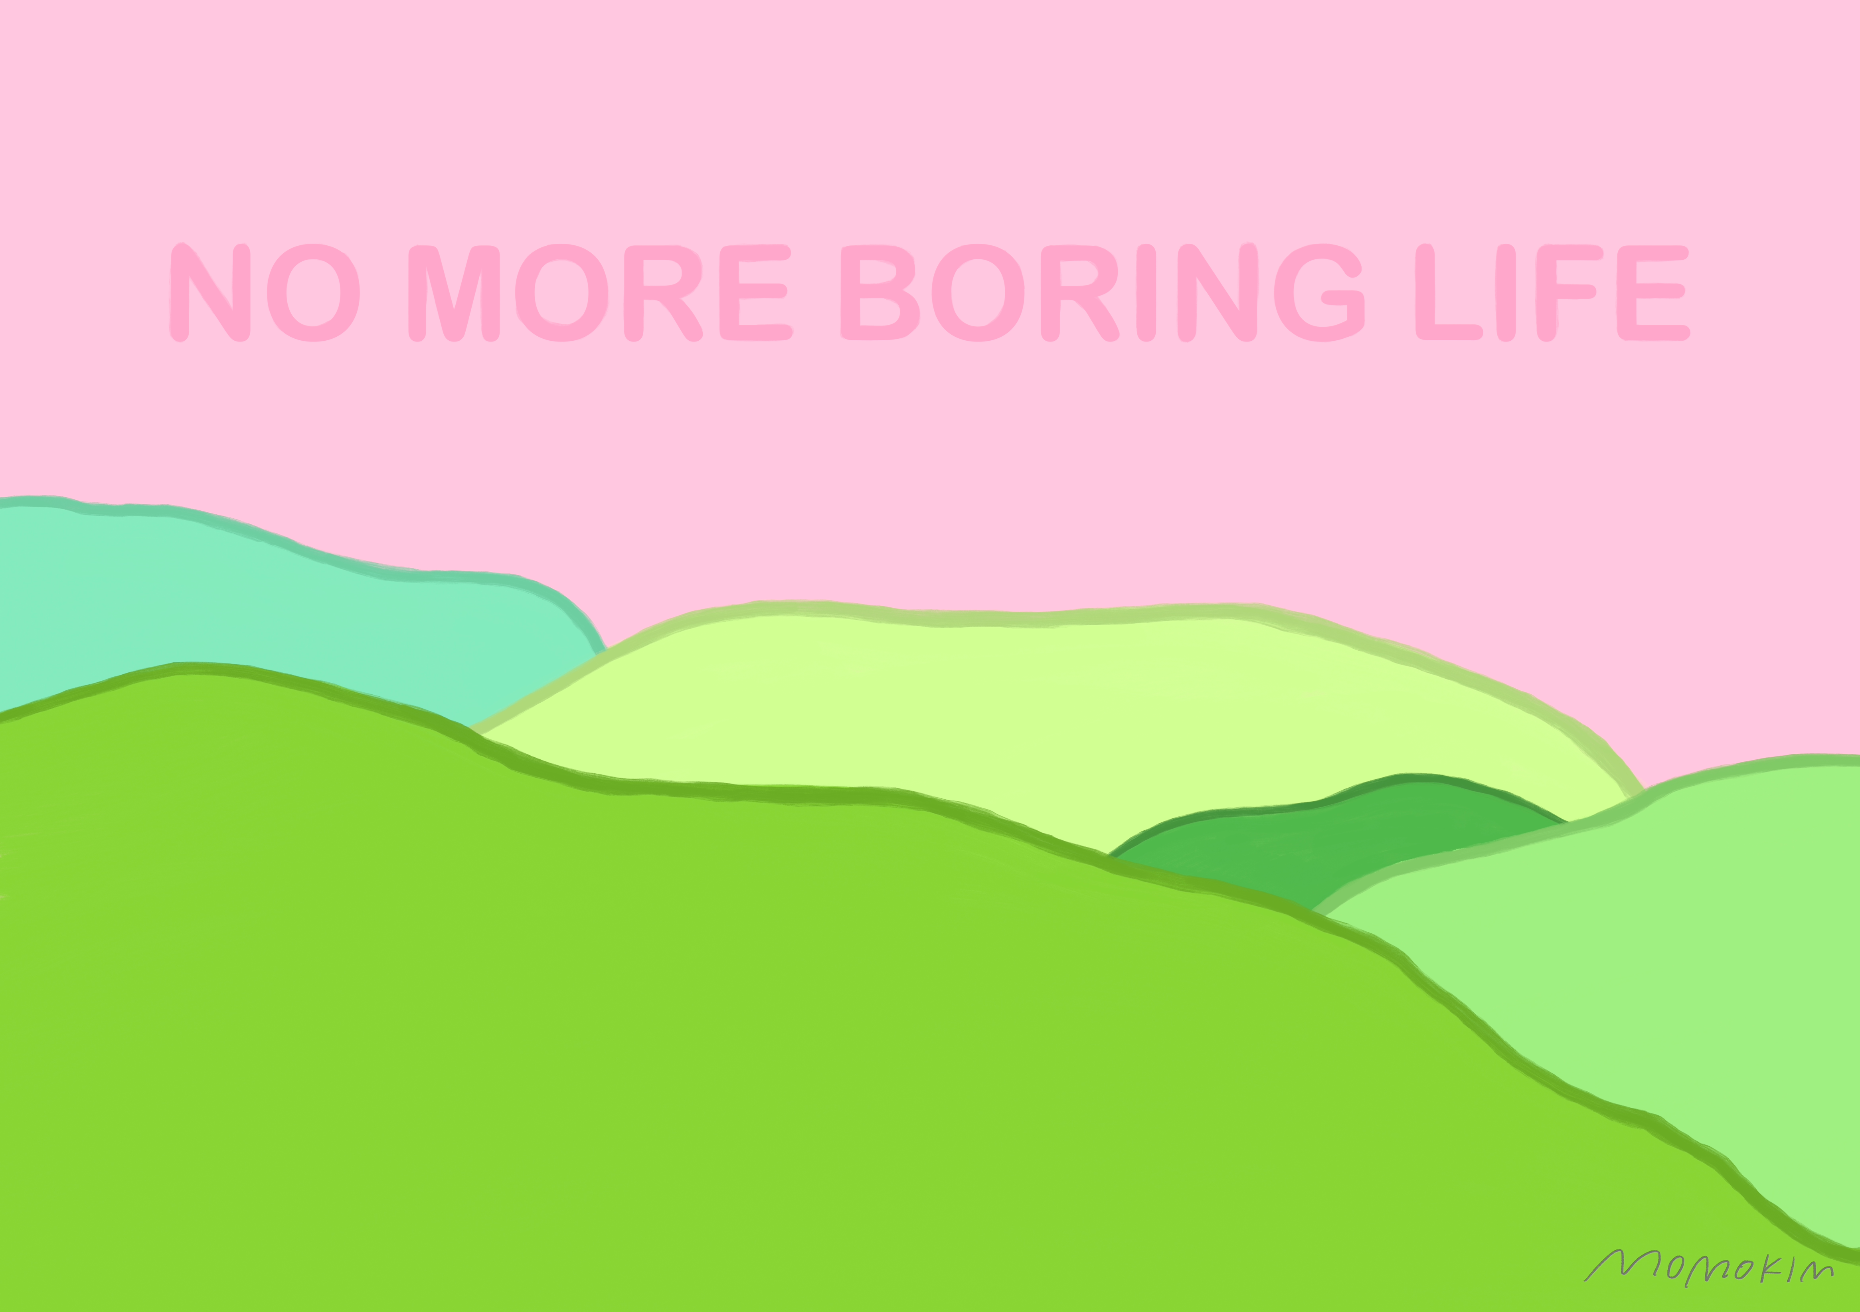 No more boring life 2020